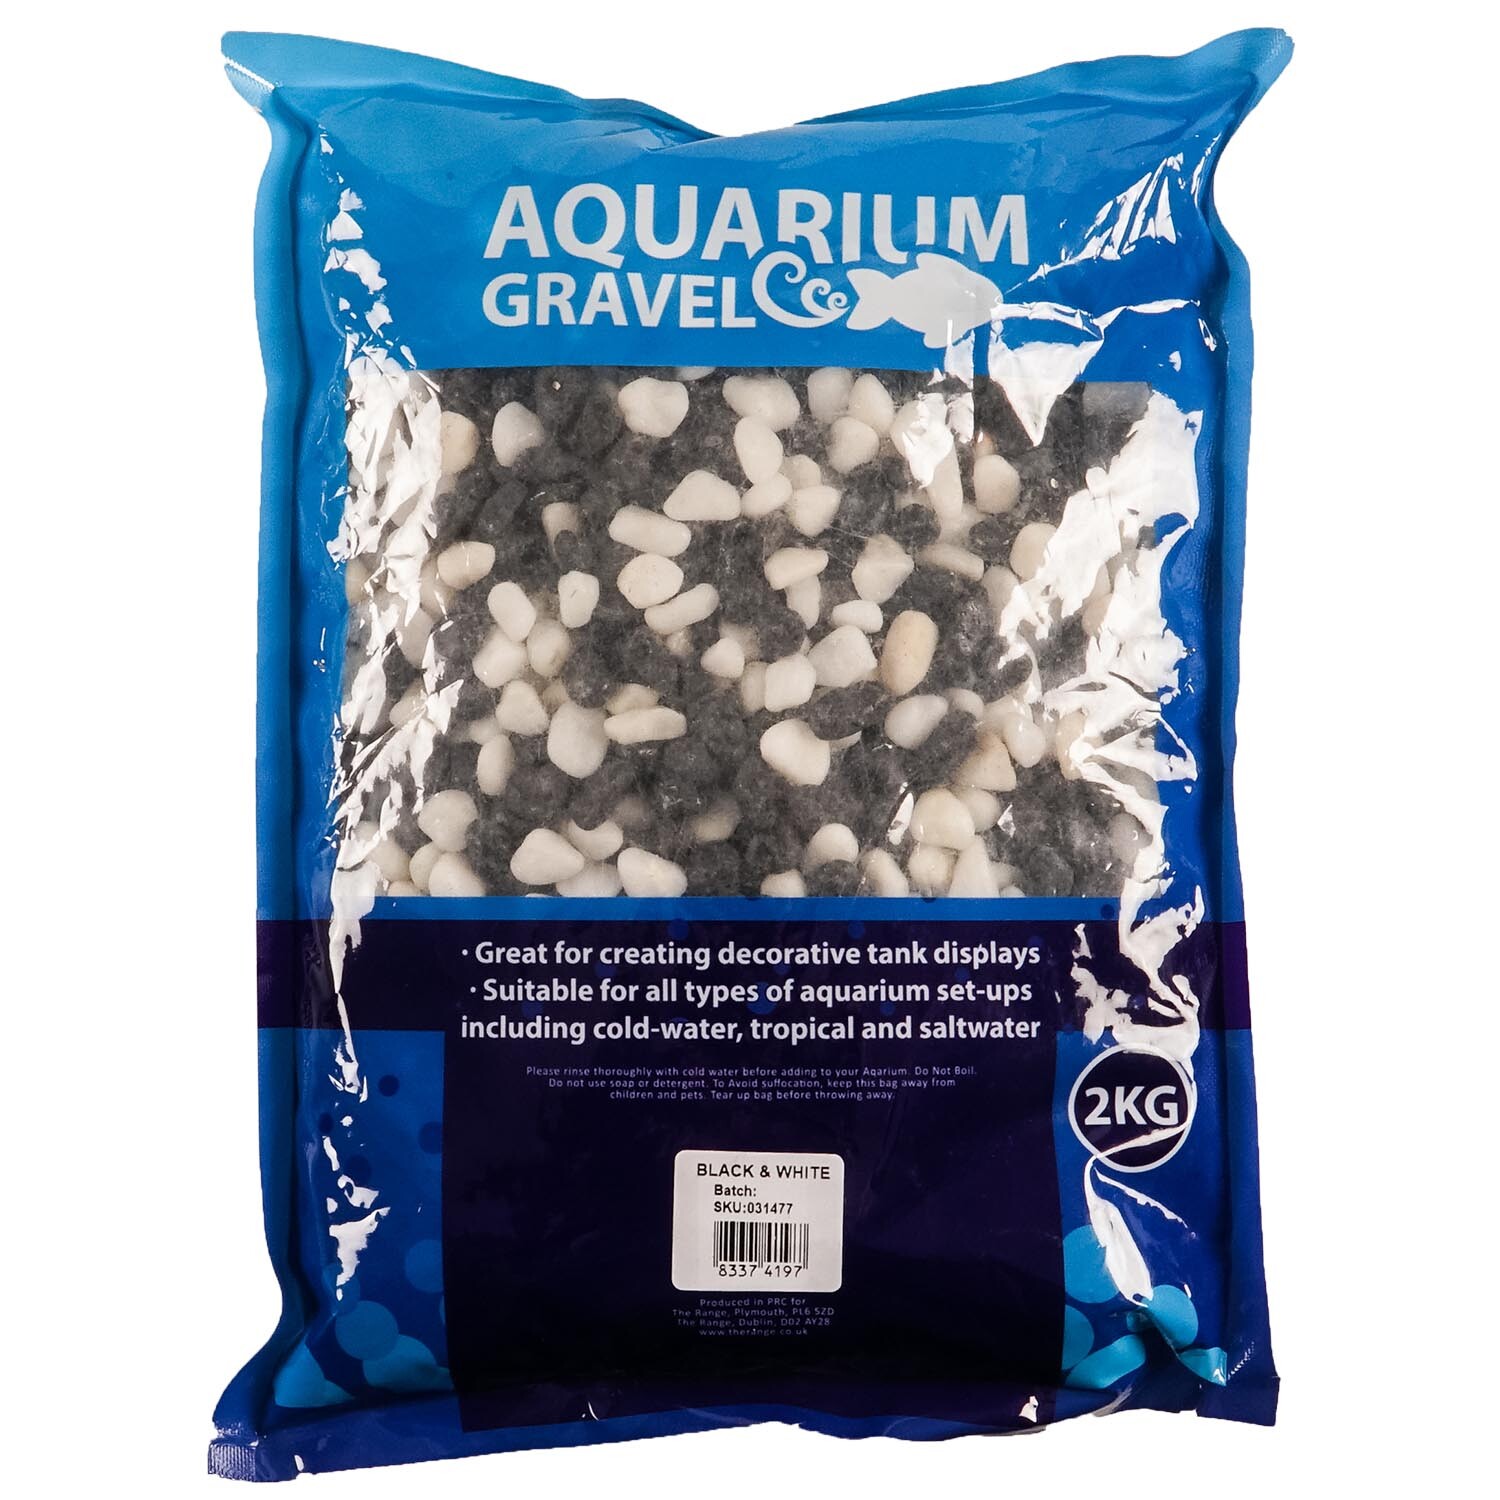 Black and White Aquarium Gravel 2kg Image